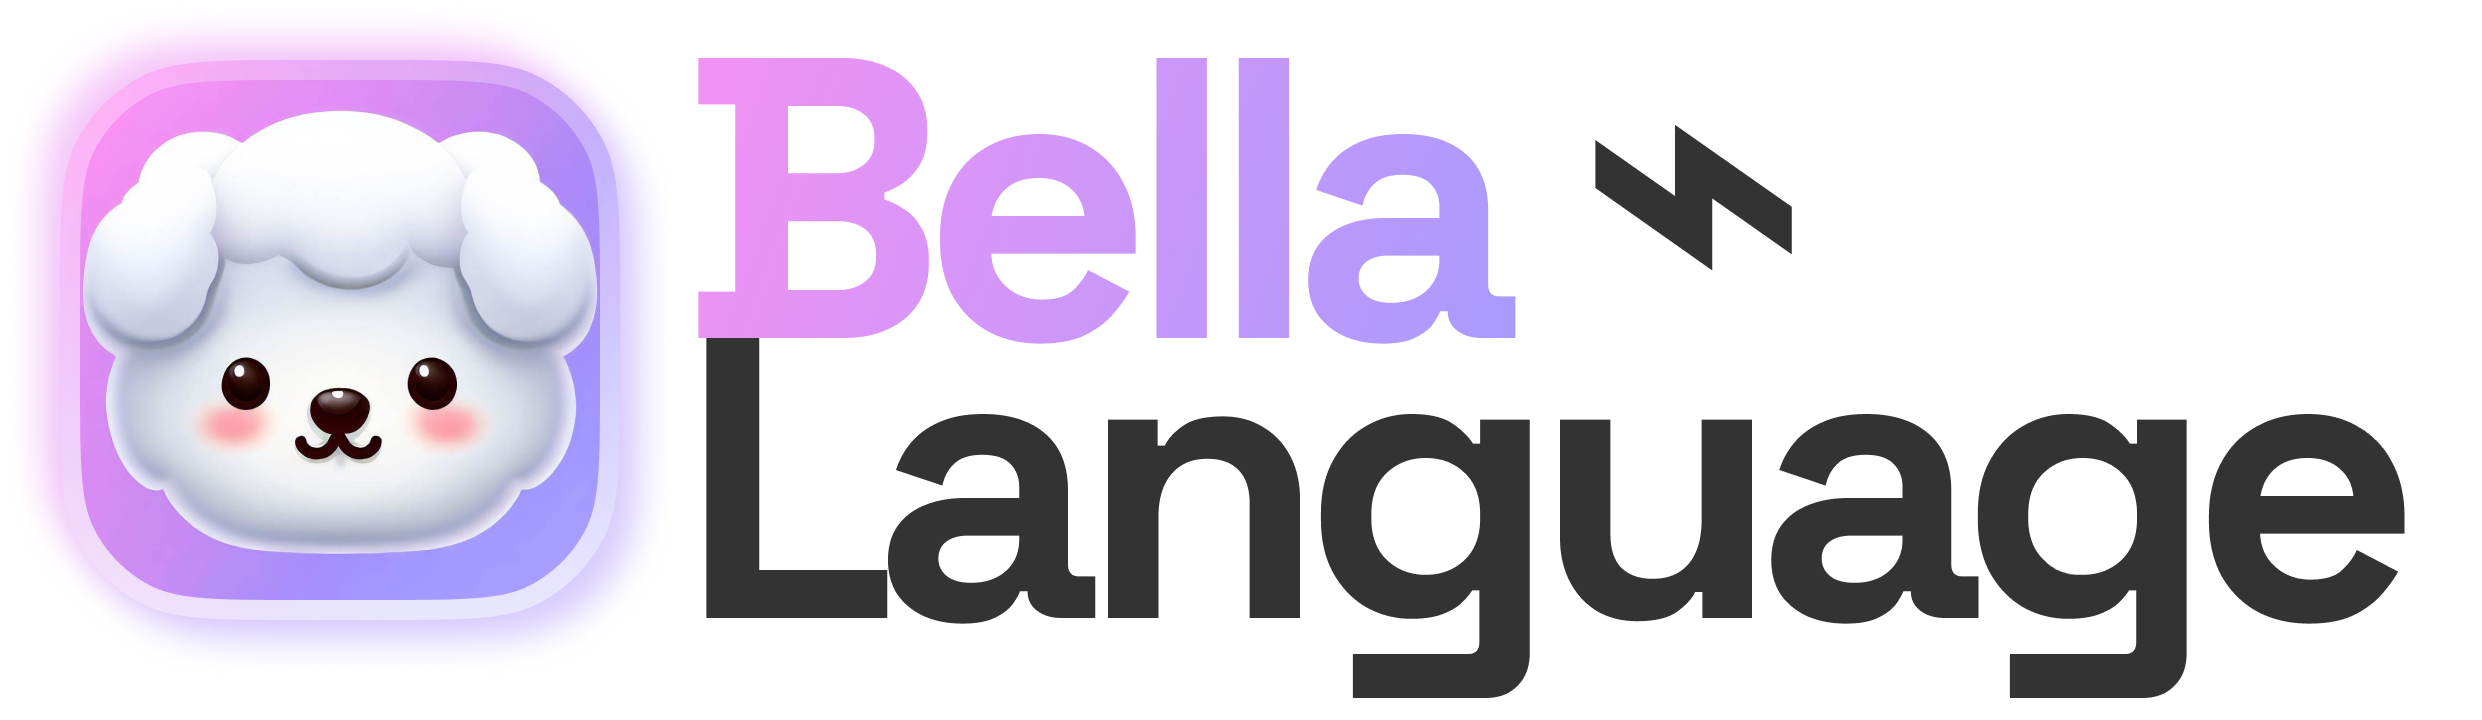 Bella-language.png